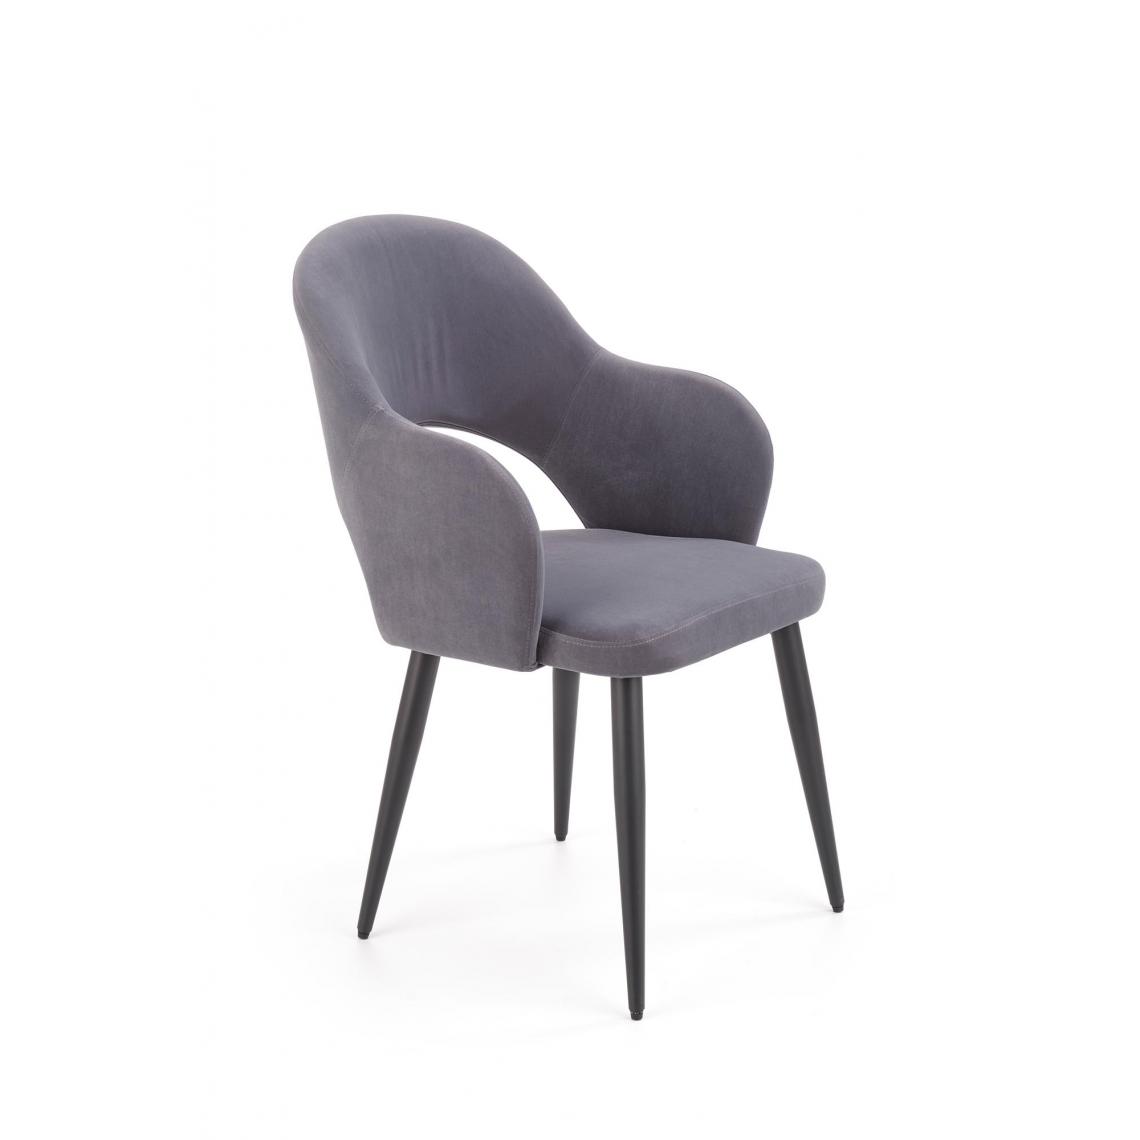 Hucoco - ELISSA - Chaise rembourrée style moderne salon/chambre - 88x55x55 - Pieds en acier - Meuble de salle à manger - Gris - Chaises